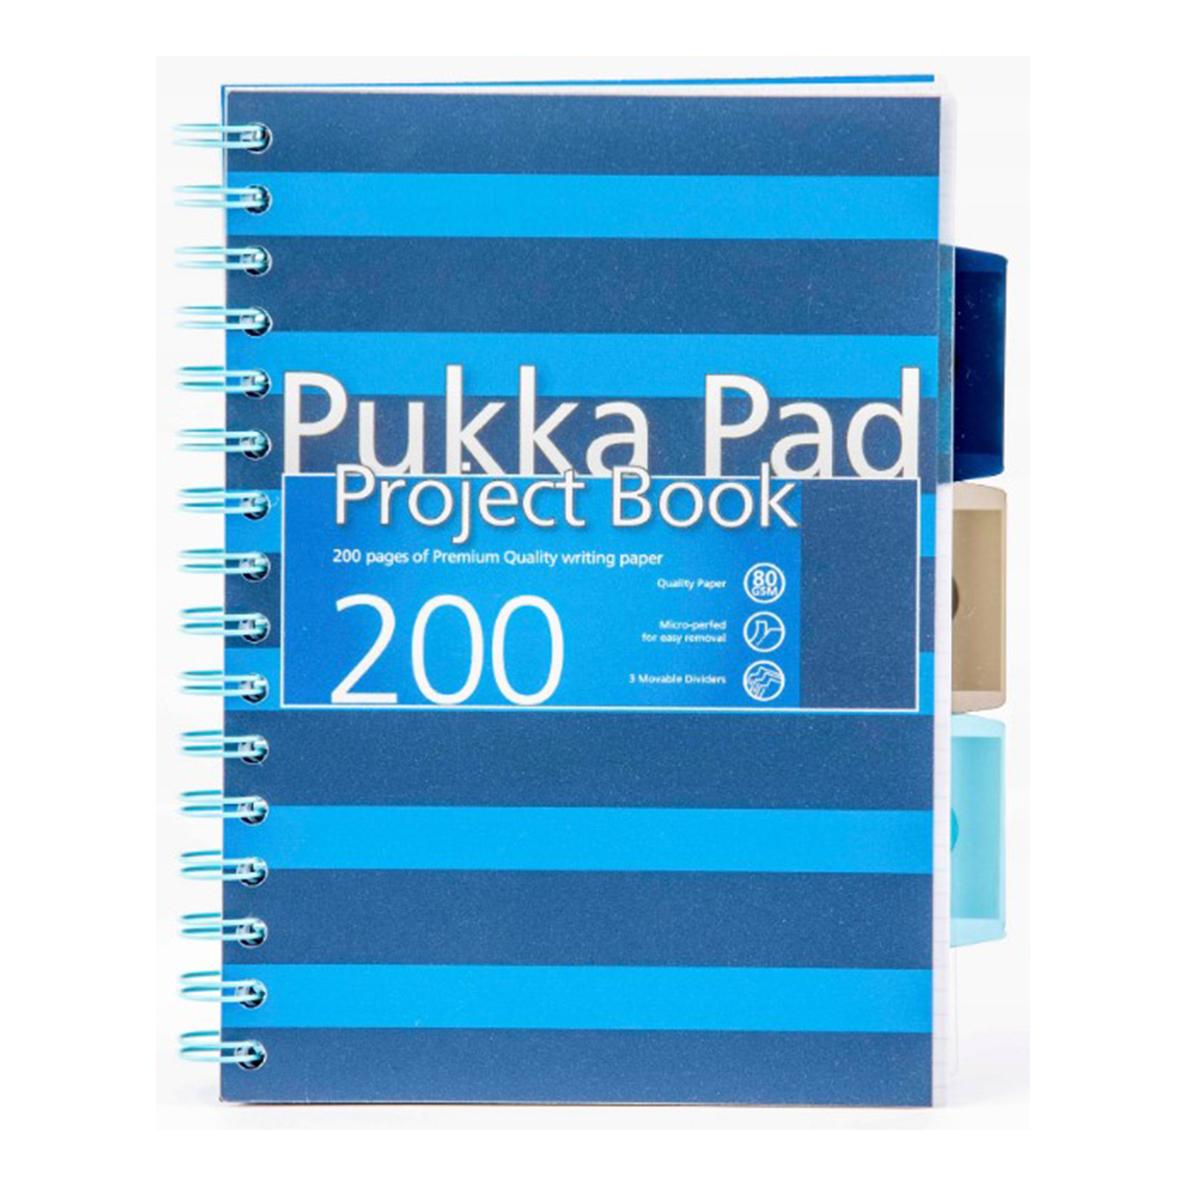 Caiet A5 cu spira si separatoare Pukka Pads PBN, 200 file, matematica, albastru